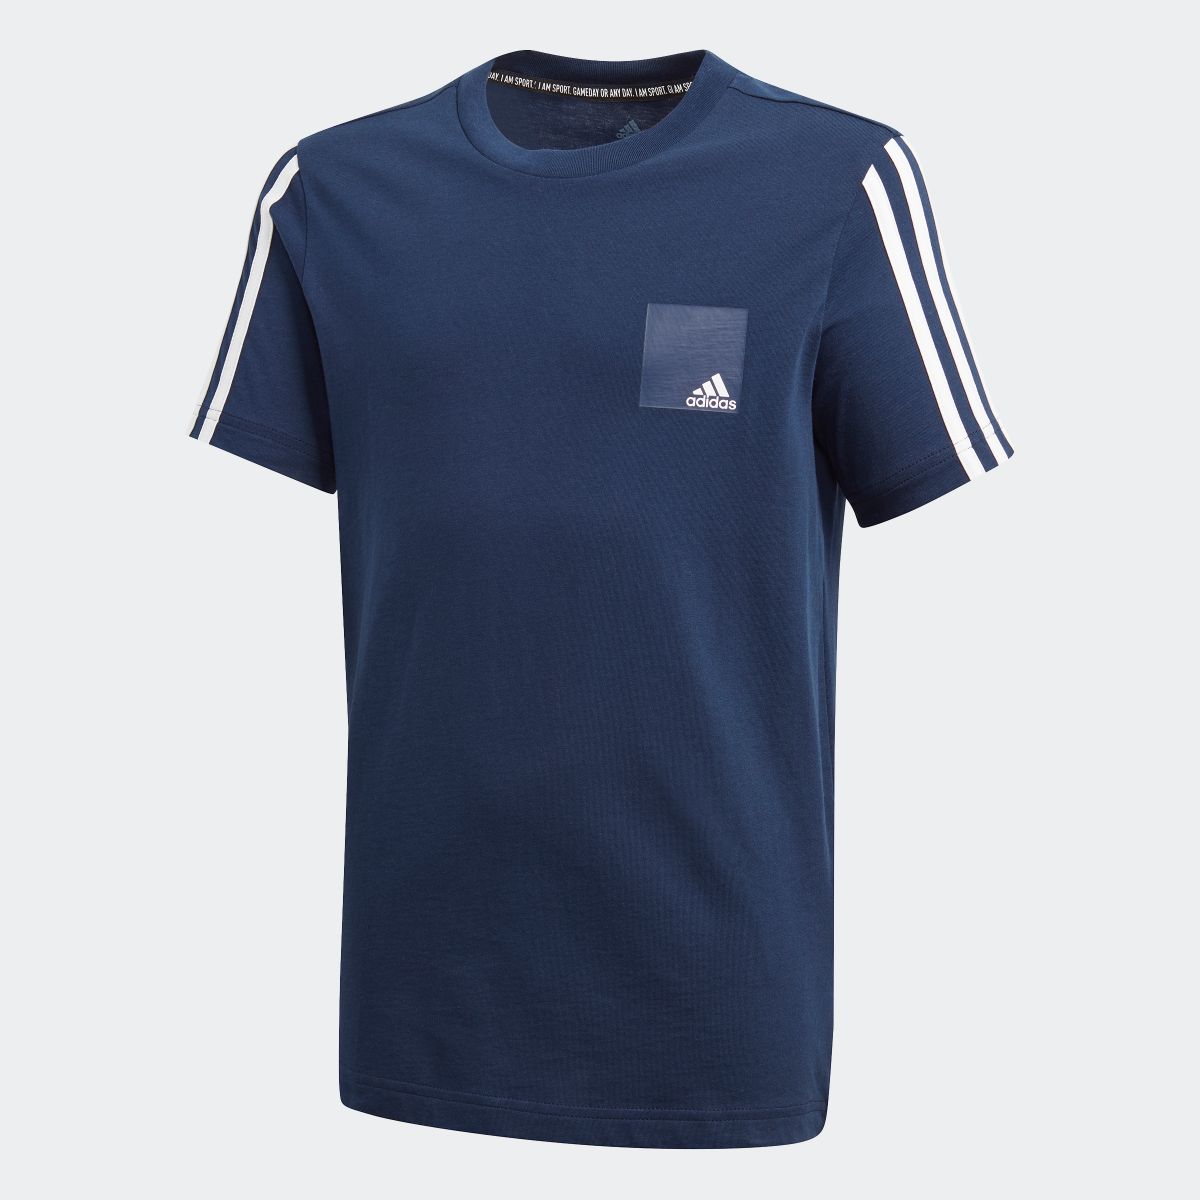 楽天市場 公式 アディダス Adidas Dmh ロゴ 半袖tシャツ Dmh Logo Tee キッズ ウェア トップス Tシャツ 青 ブルー Fm7594 半袖 Adidas Online Shop 楽天市場店